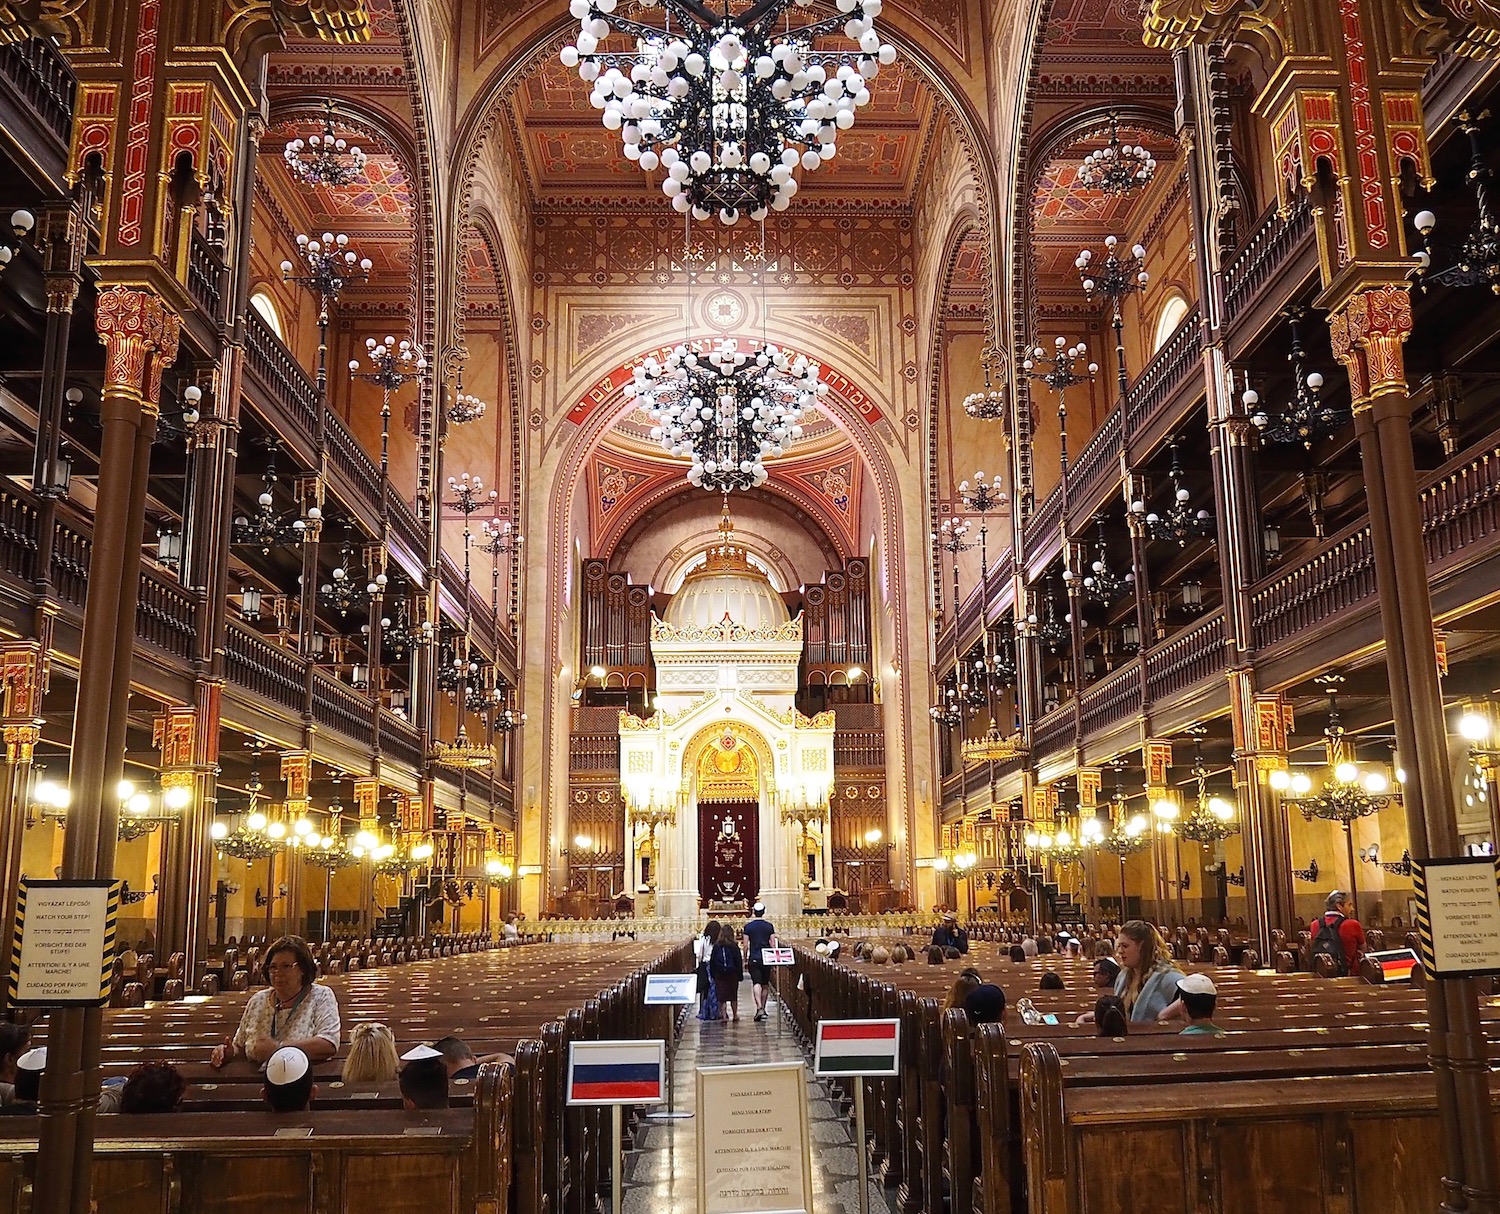 Visiter Budapest en famille, itinéraire sur 5 jours - Balade dans le quartier juif - Erzsebetvaros - Grande Synagogue